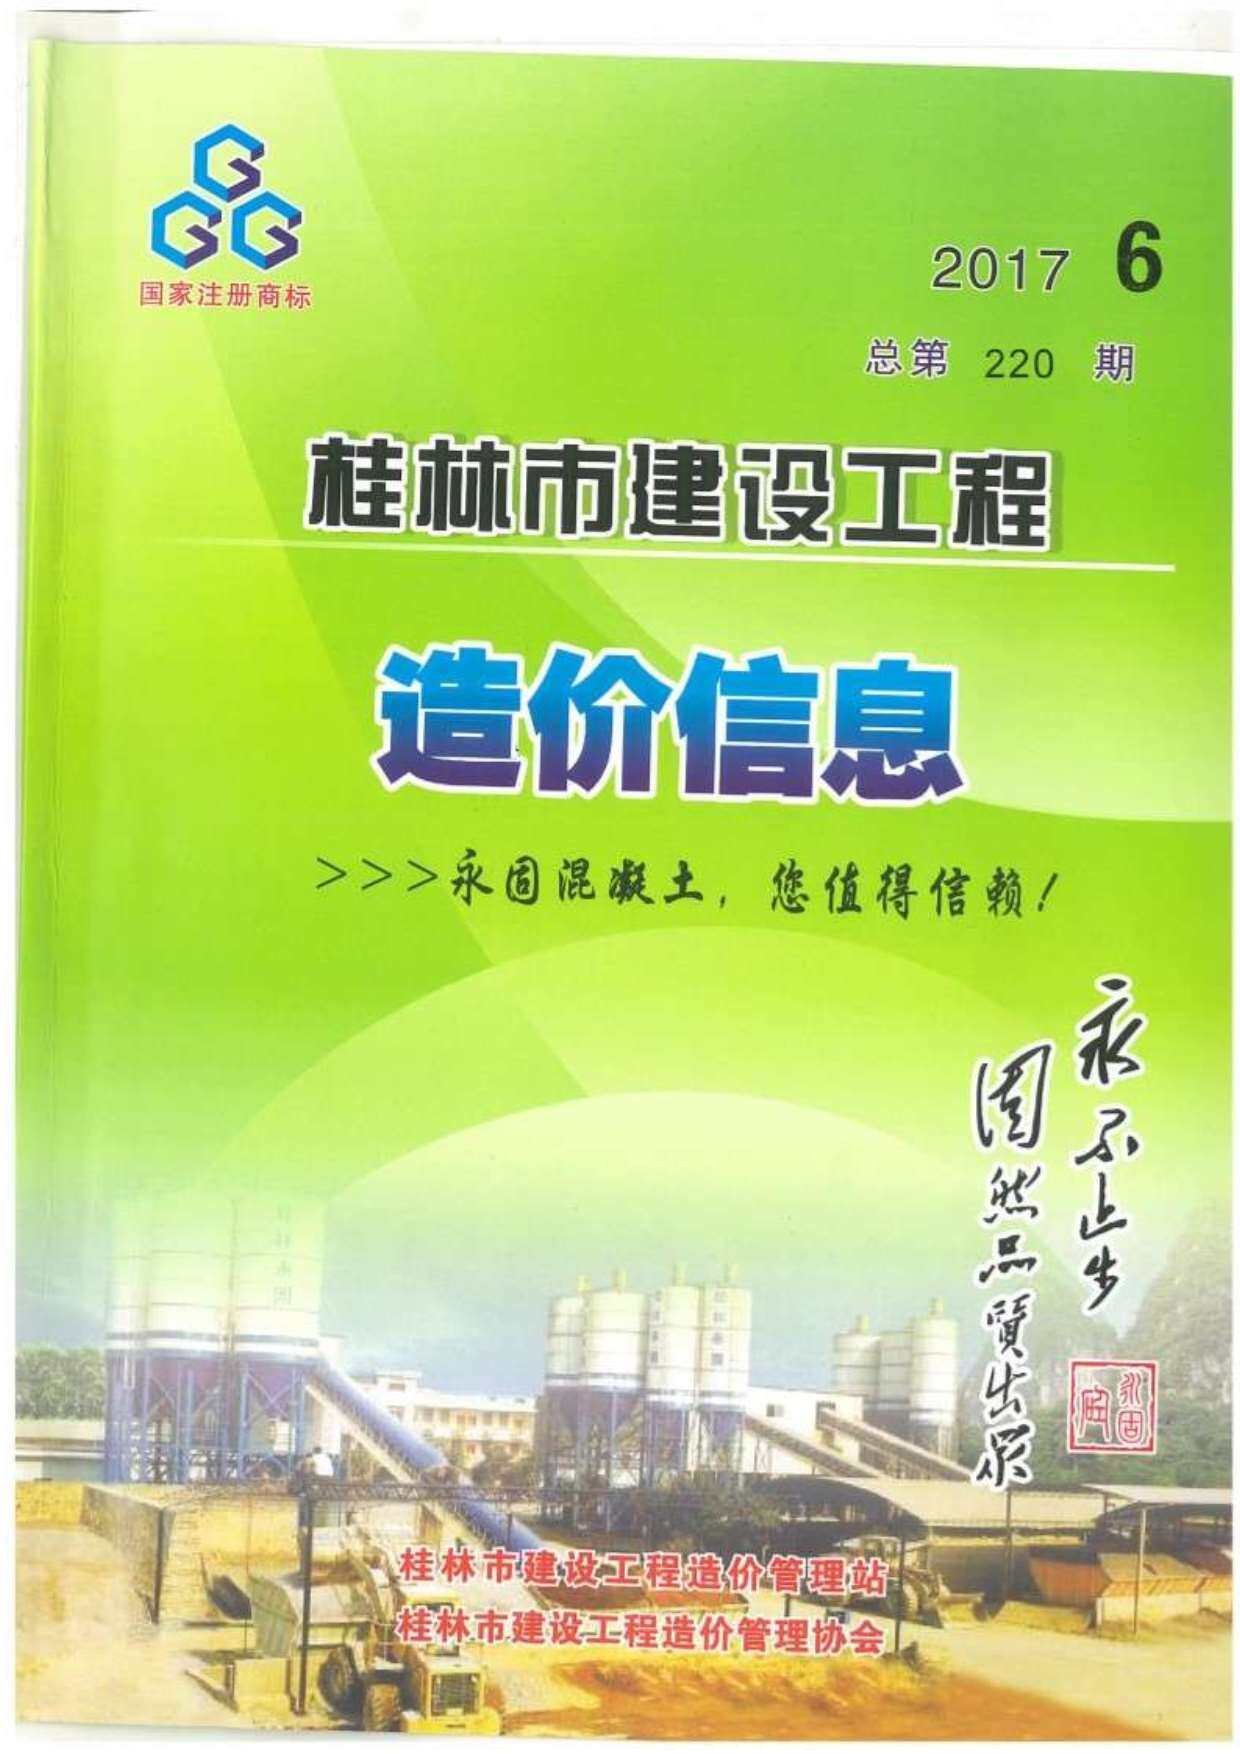 桂林市2017年6月造价信息造价信息期刊PDF扫描件